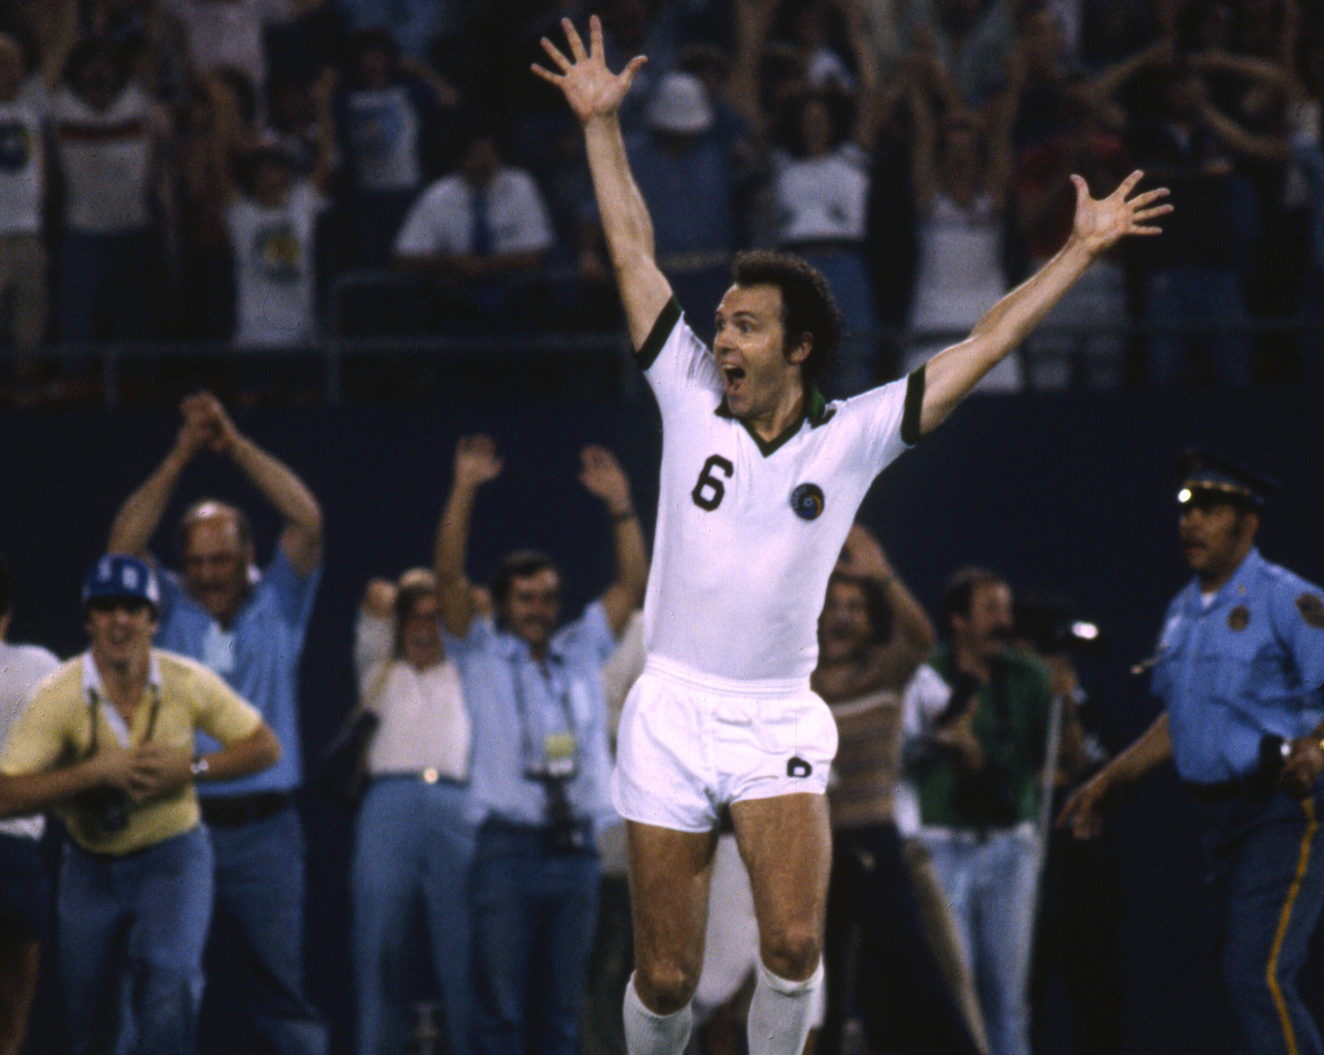 Beckenbauer, Kaiser world football